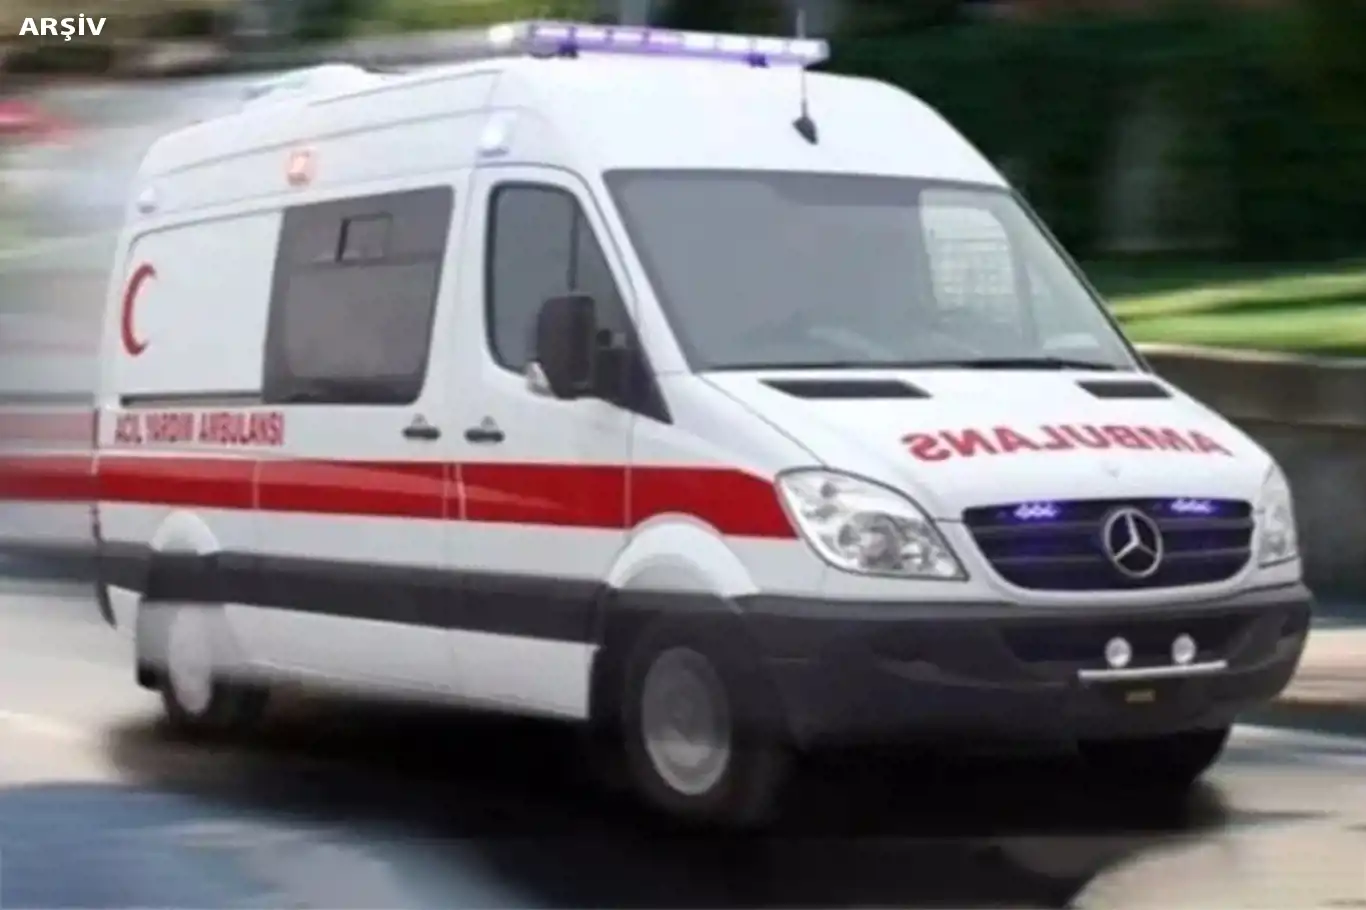 Gaziantep'te 2 otomobil çarpıştı: 1 ölü, 9 yaralı